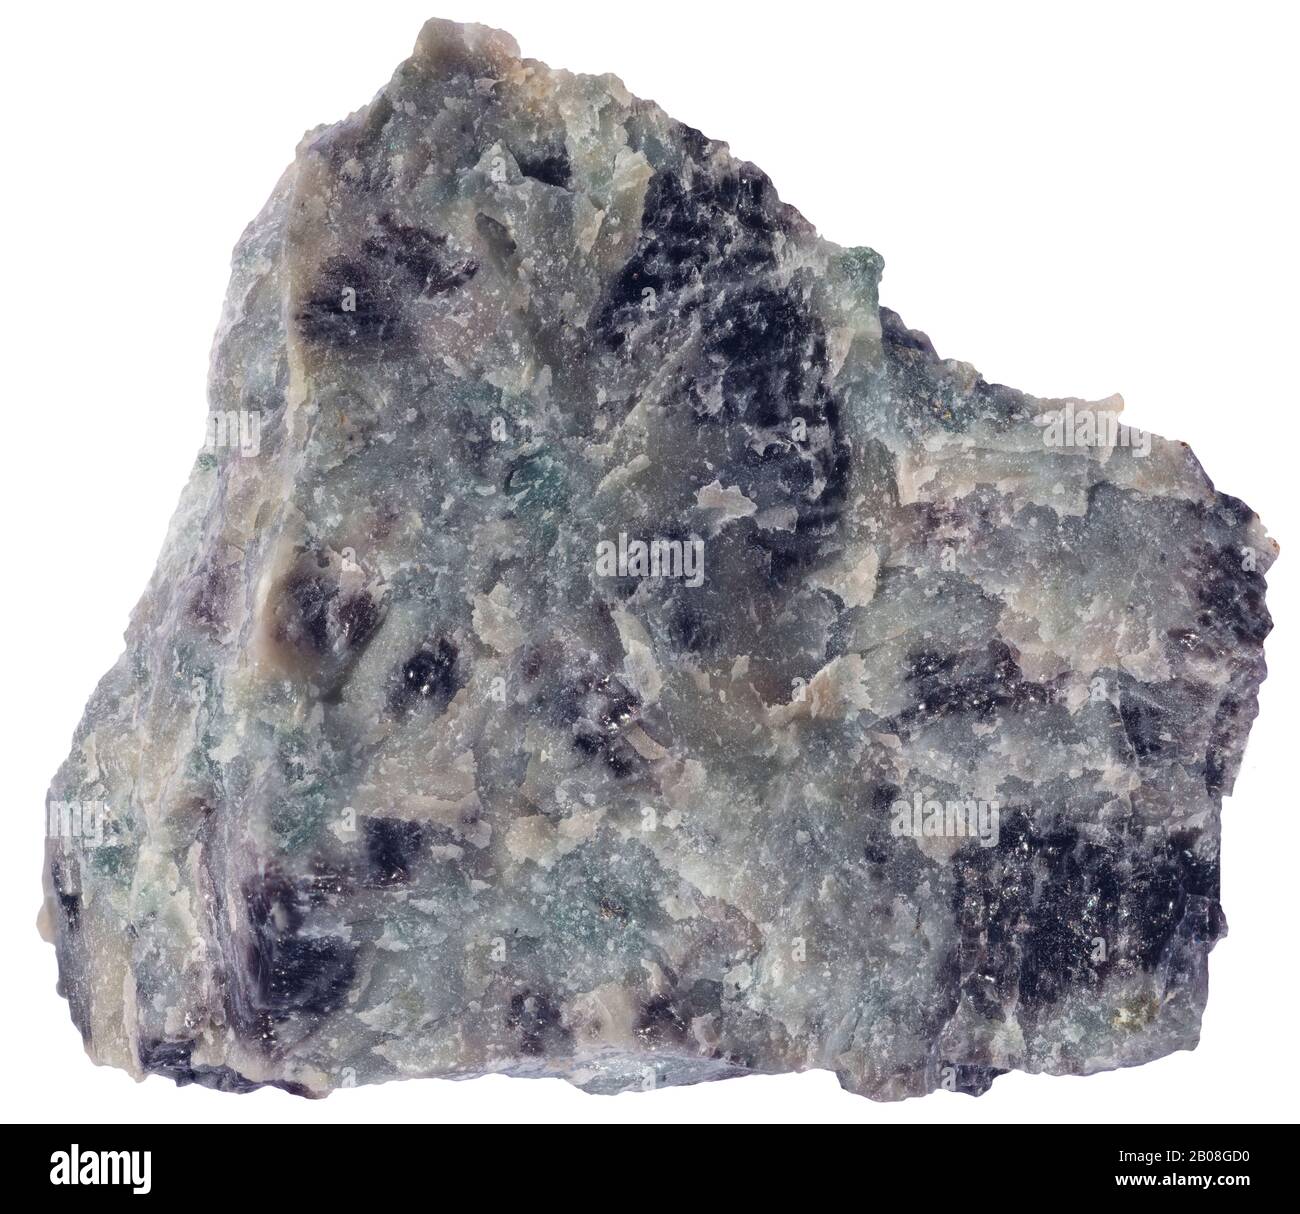 Nepthelinsyenit, Magmatic, Mt St Hilaire, Quebec Nepheline Syenit ist ein holokristallines plutonisches Gestein, das größtenteils aus Nephelin und Alkali besteht Stockfoto